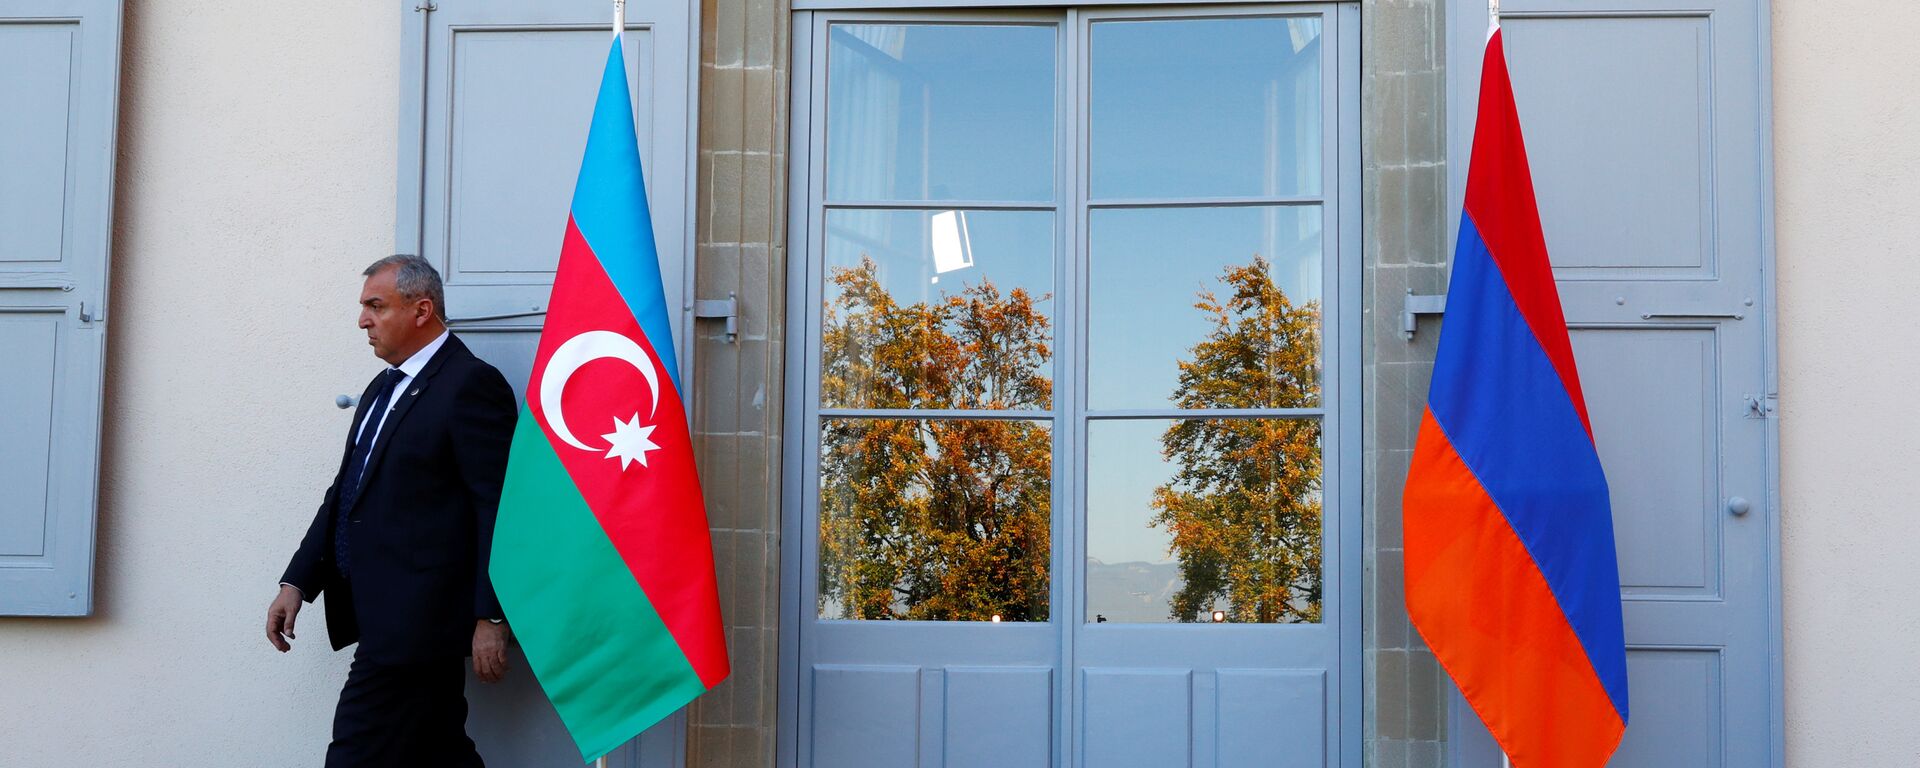 Охранник проходит мимо азербайджанского (слева) и армянского флага на открытии переговоров в Женеве, Швейцария - Sputnik Азербайджан, 1920, 23.10.2021